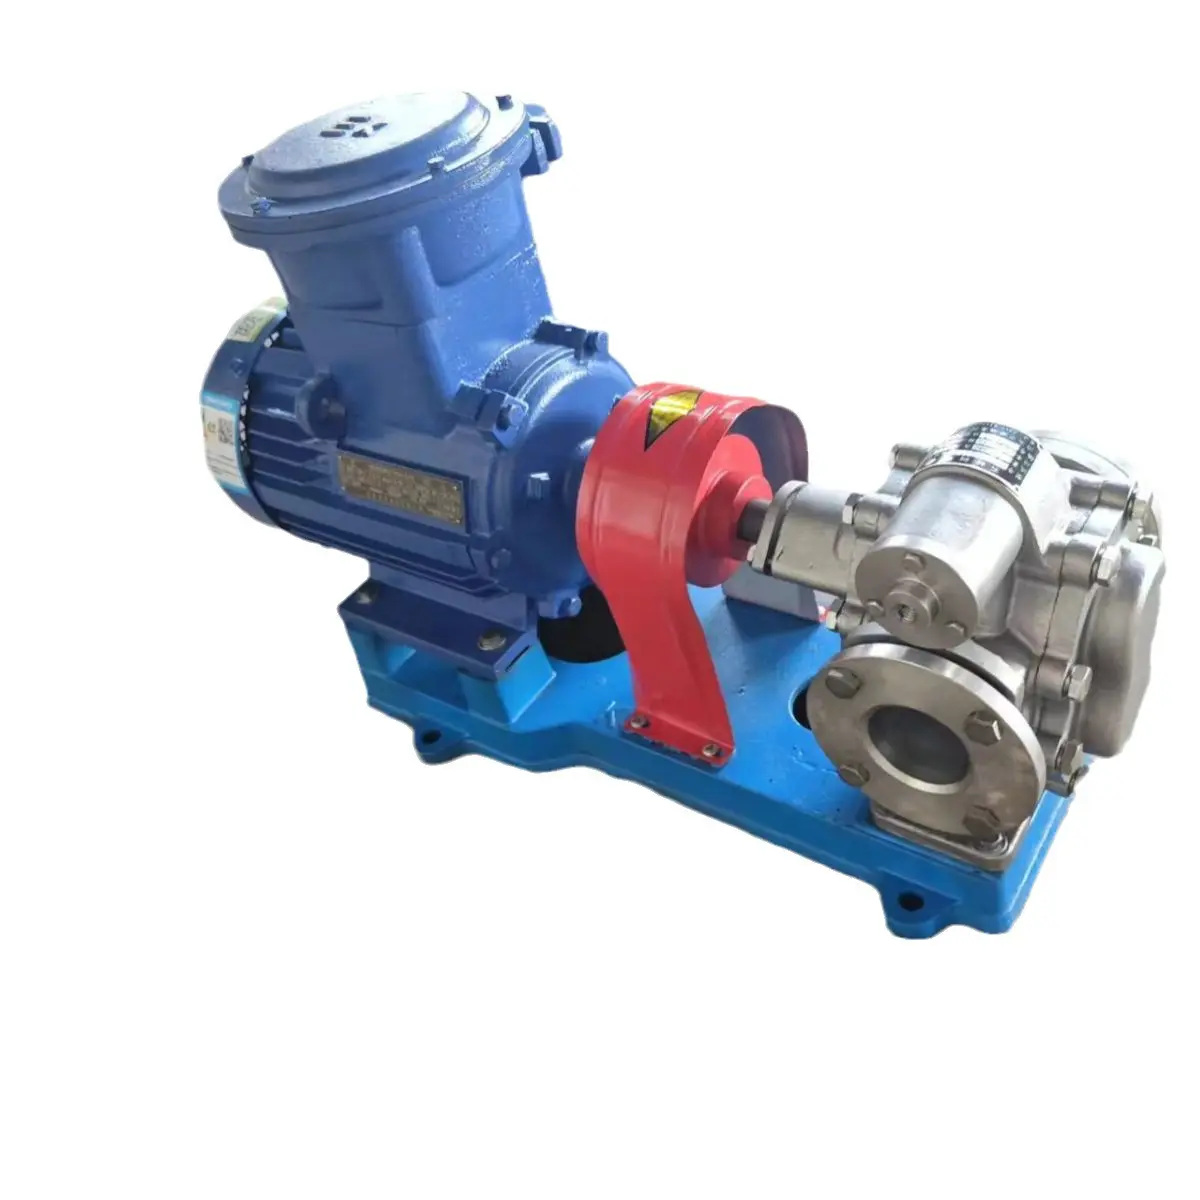 Pompa di trasferimento olio commestibile ad alta temperatura pompa centrifuga pompa ad acqua Diesel pompa ad ingranaggi Kcb